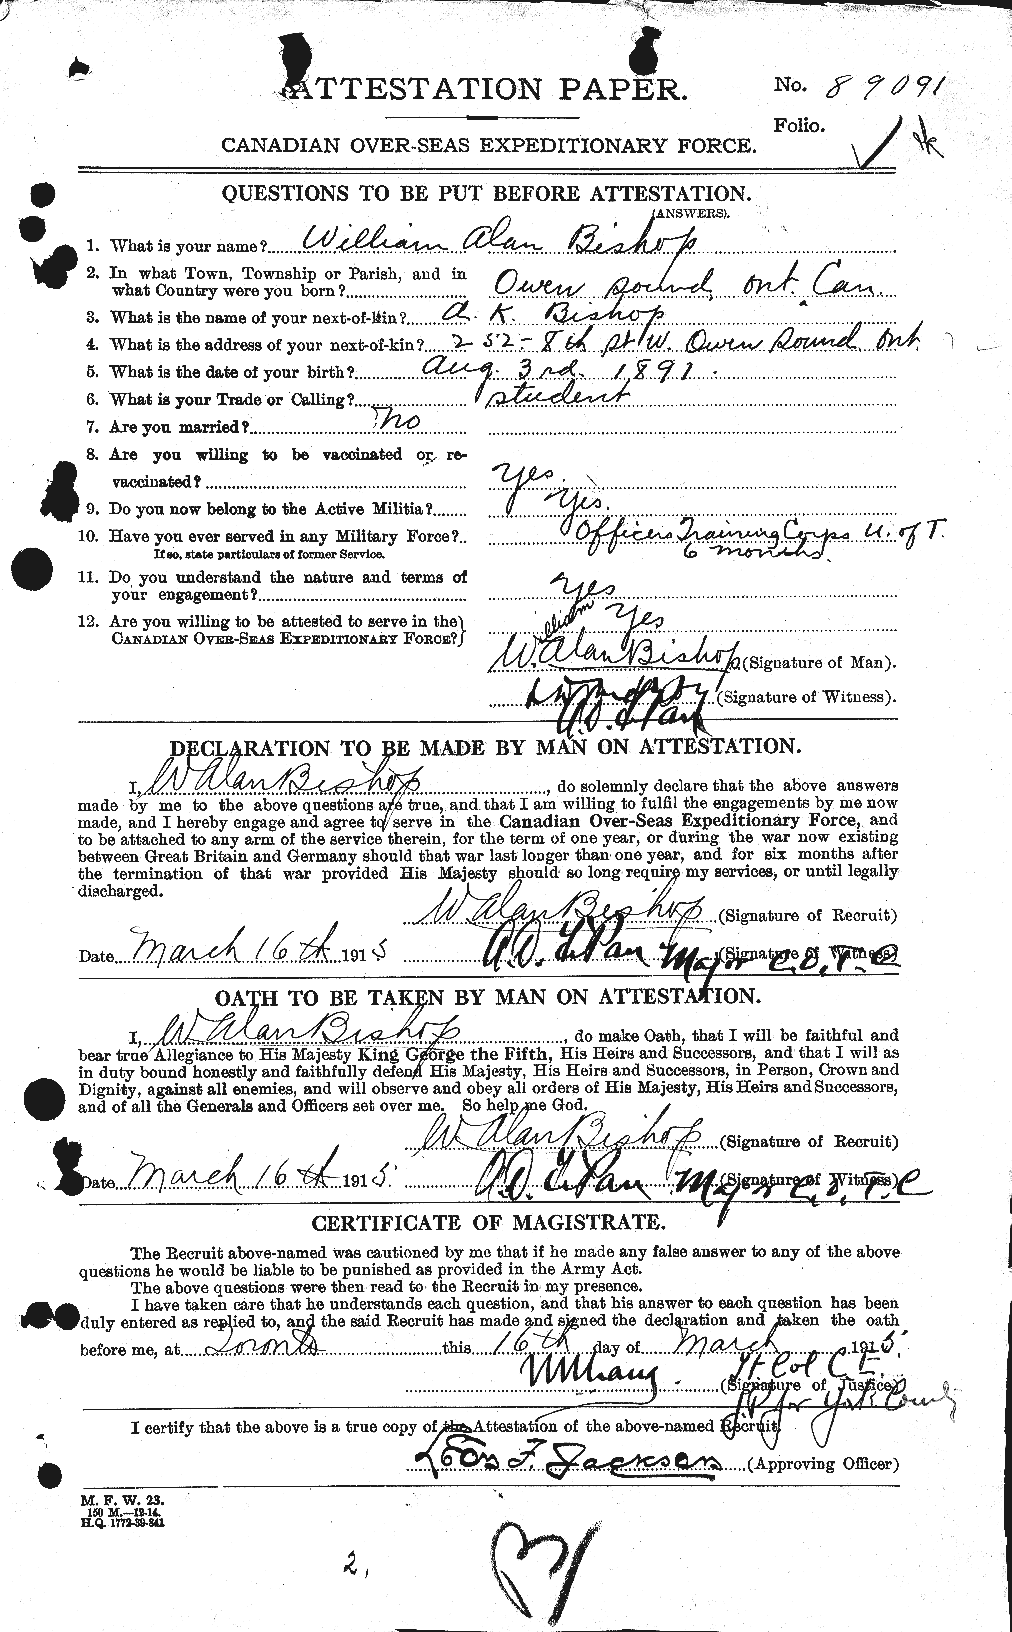 Dossiers du Personnel de la Première Guerre mondiale - CEC 245641a